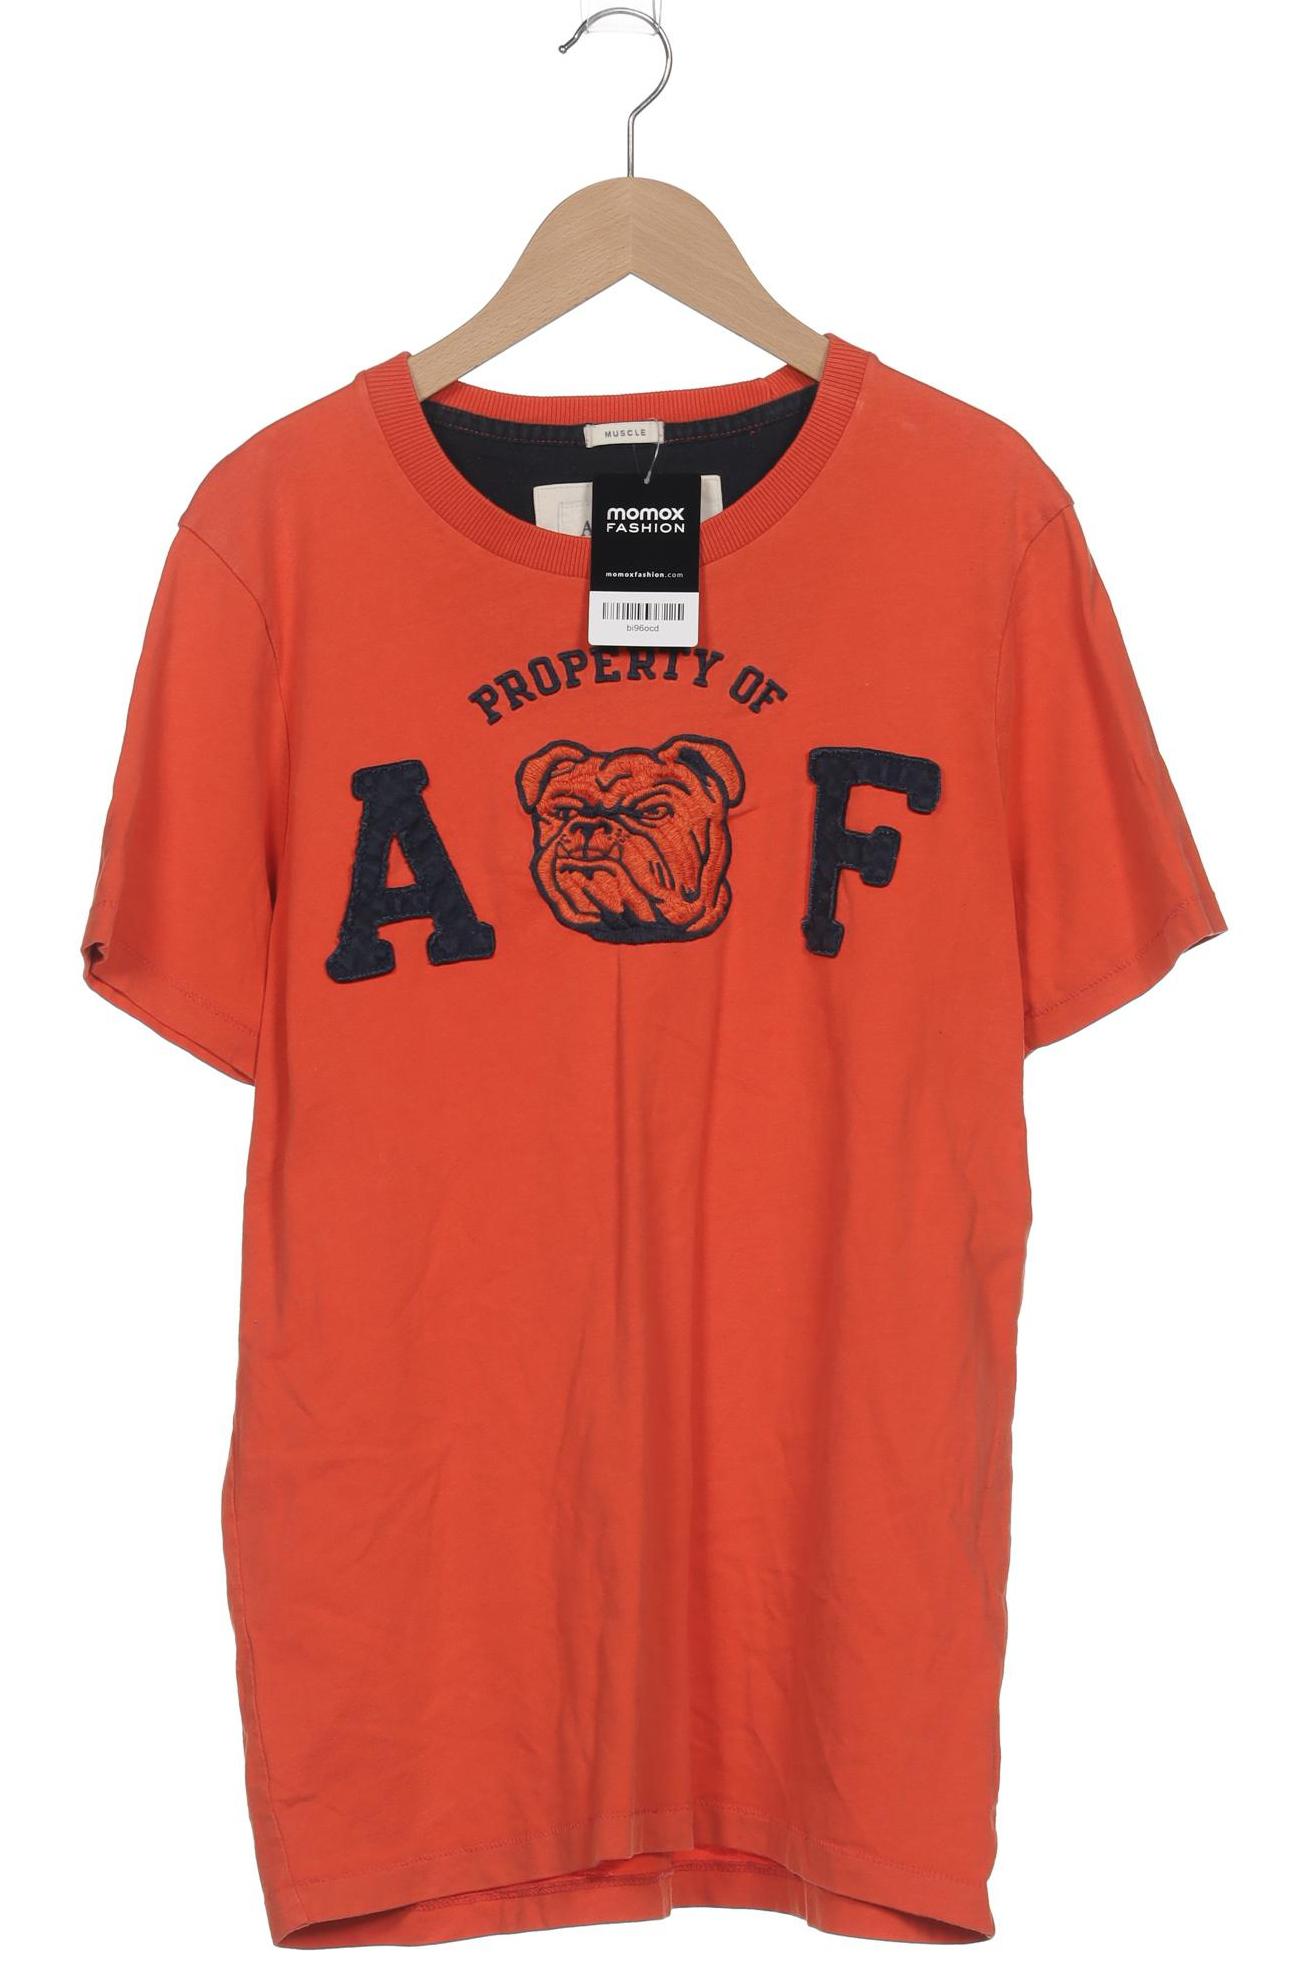 Abercrombie & Fitch Herren T-Shirt, orange, Gr. 54 von Abercrombie & Fitch